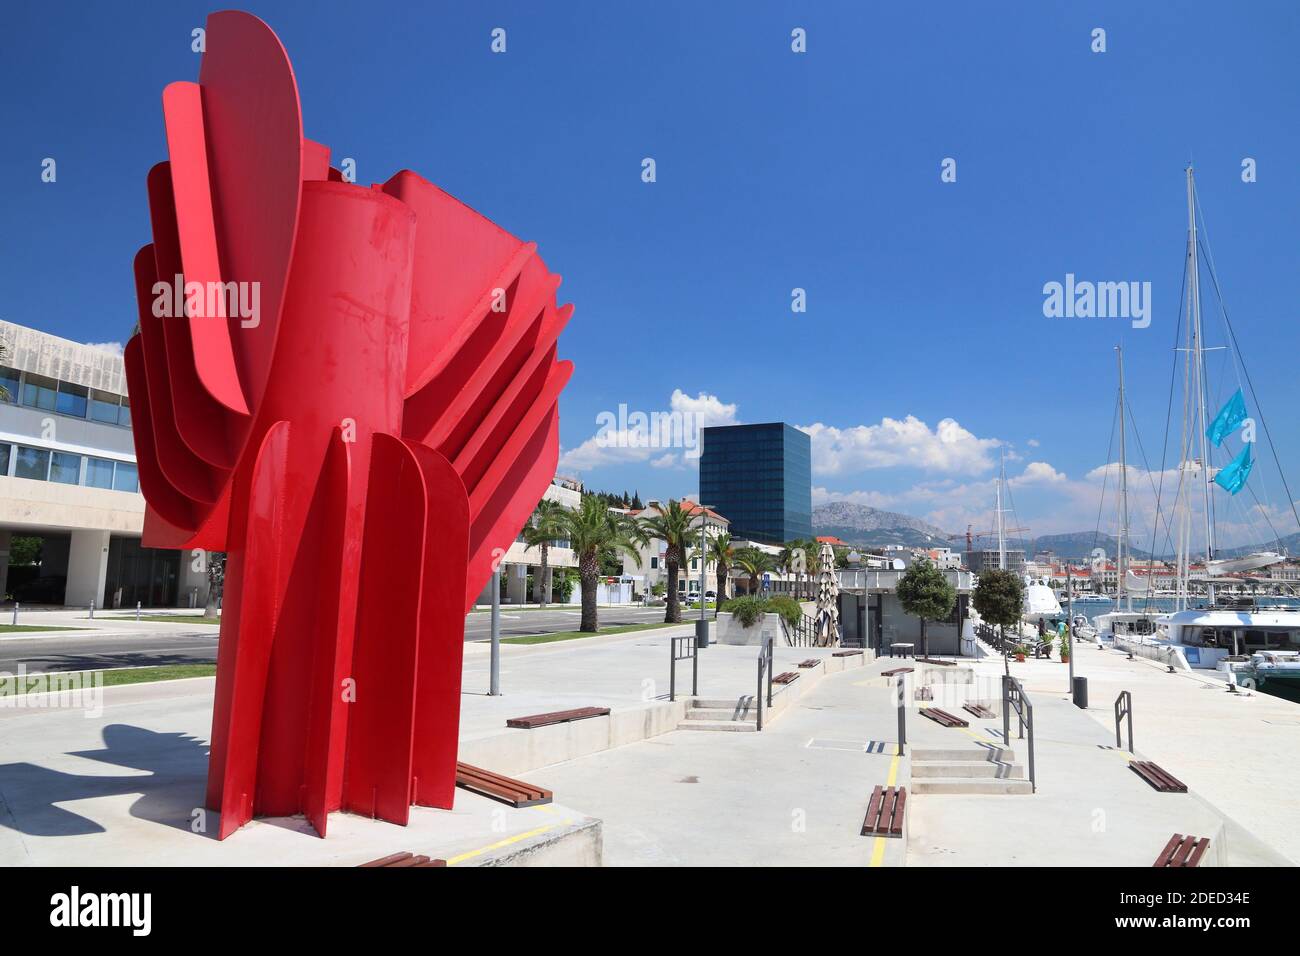 SPLIT, KROATIEN - 20. JULI 2019: Kunstwerk im öffentlichen Raum namens Wind Rose von Bildender Künstler Jagoda Buic in Split. Kroatien hatte 18.4 Millionen Touristen Stockfoto